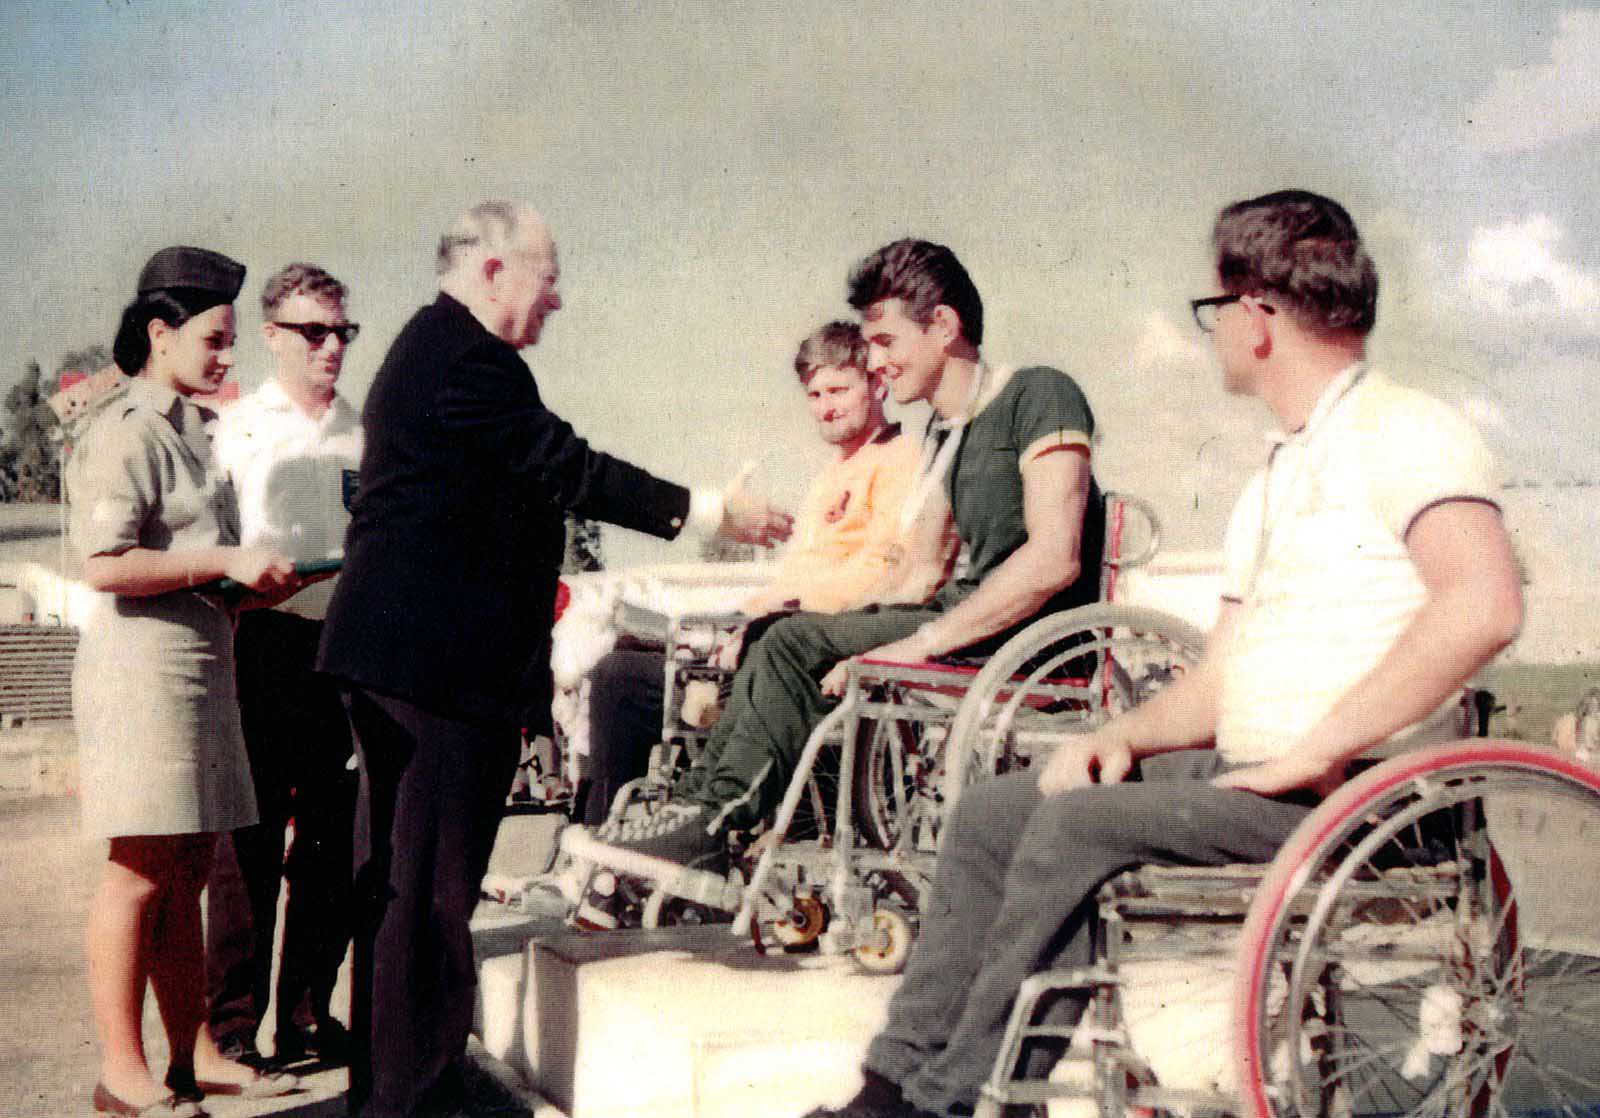 د. لودڤيچ چوتمان، مؤسس الألعاب البارالمبية، يقدّم الميدالية الذهبية خلال الألعاب البارالمبية تل أبيب 1964 (تصوير: Australian Paralympic Committee / ويكيميديا كونونس)